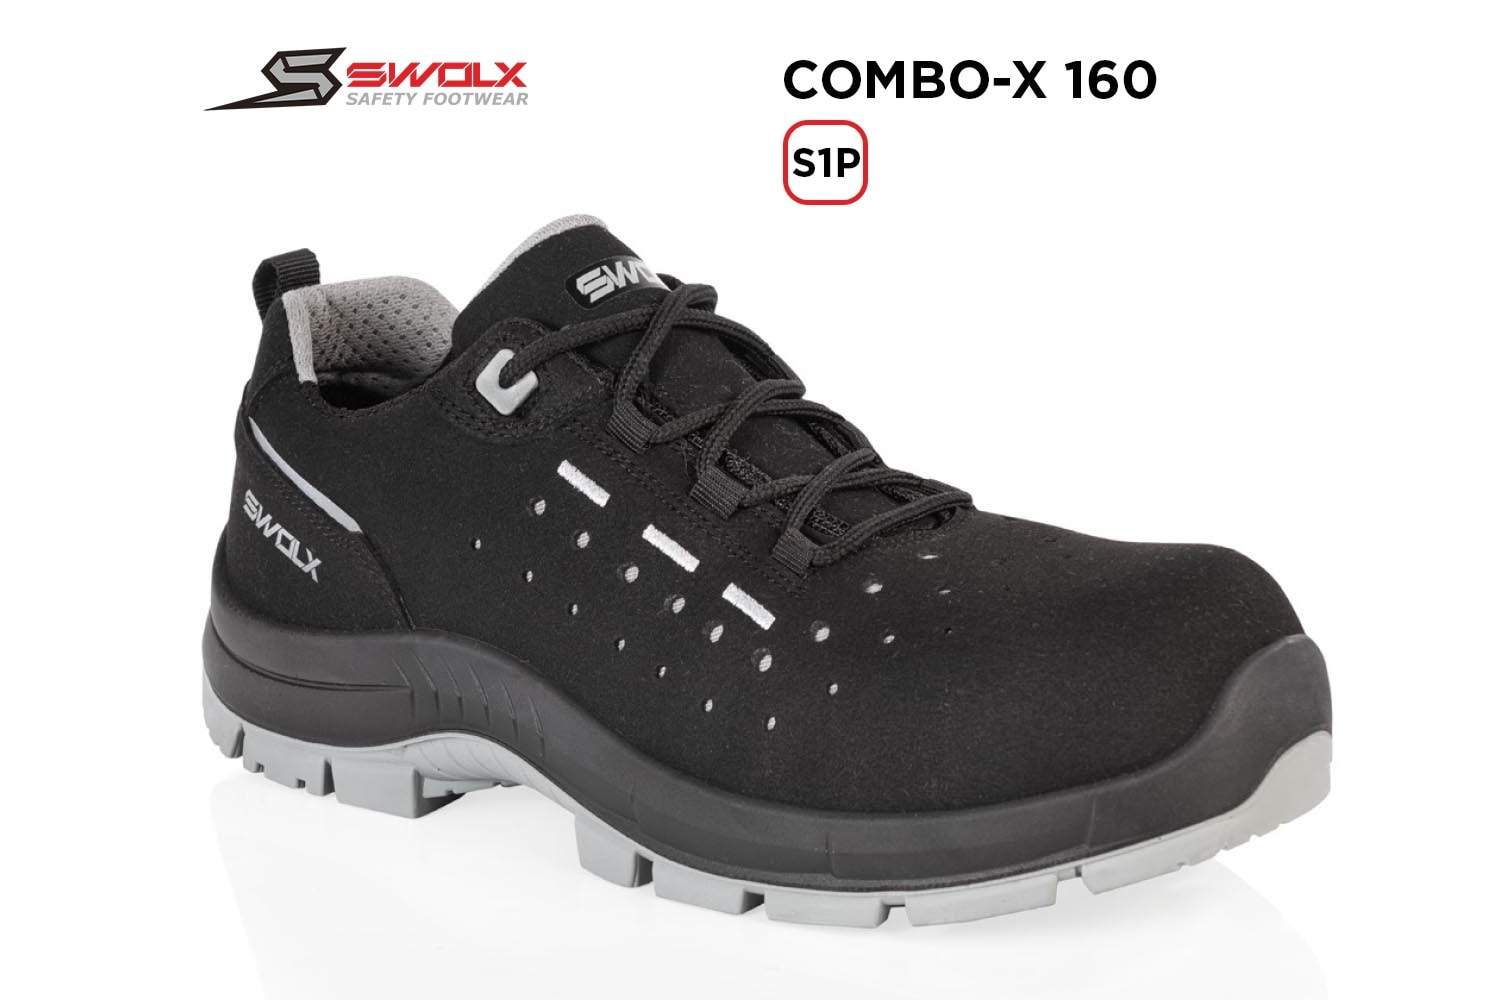 Swolx İş Ayakkabısı - Combo-X 160 S1P - 42